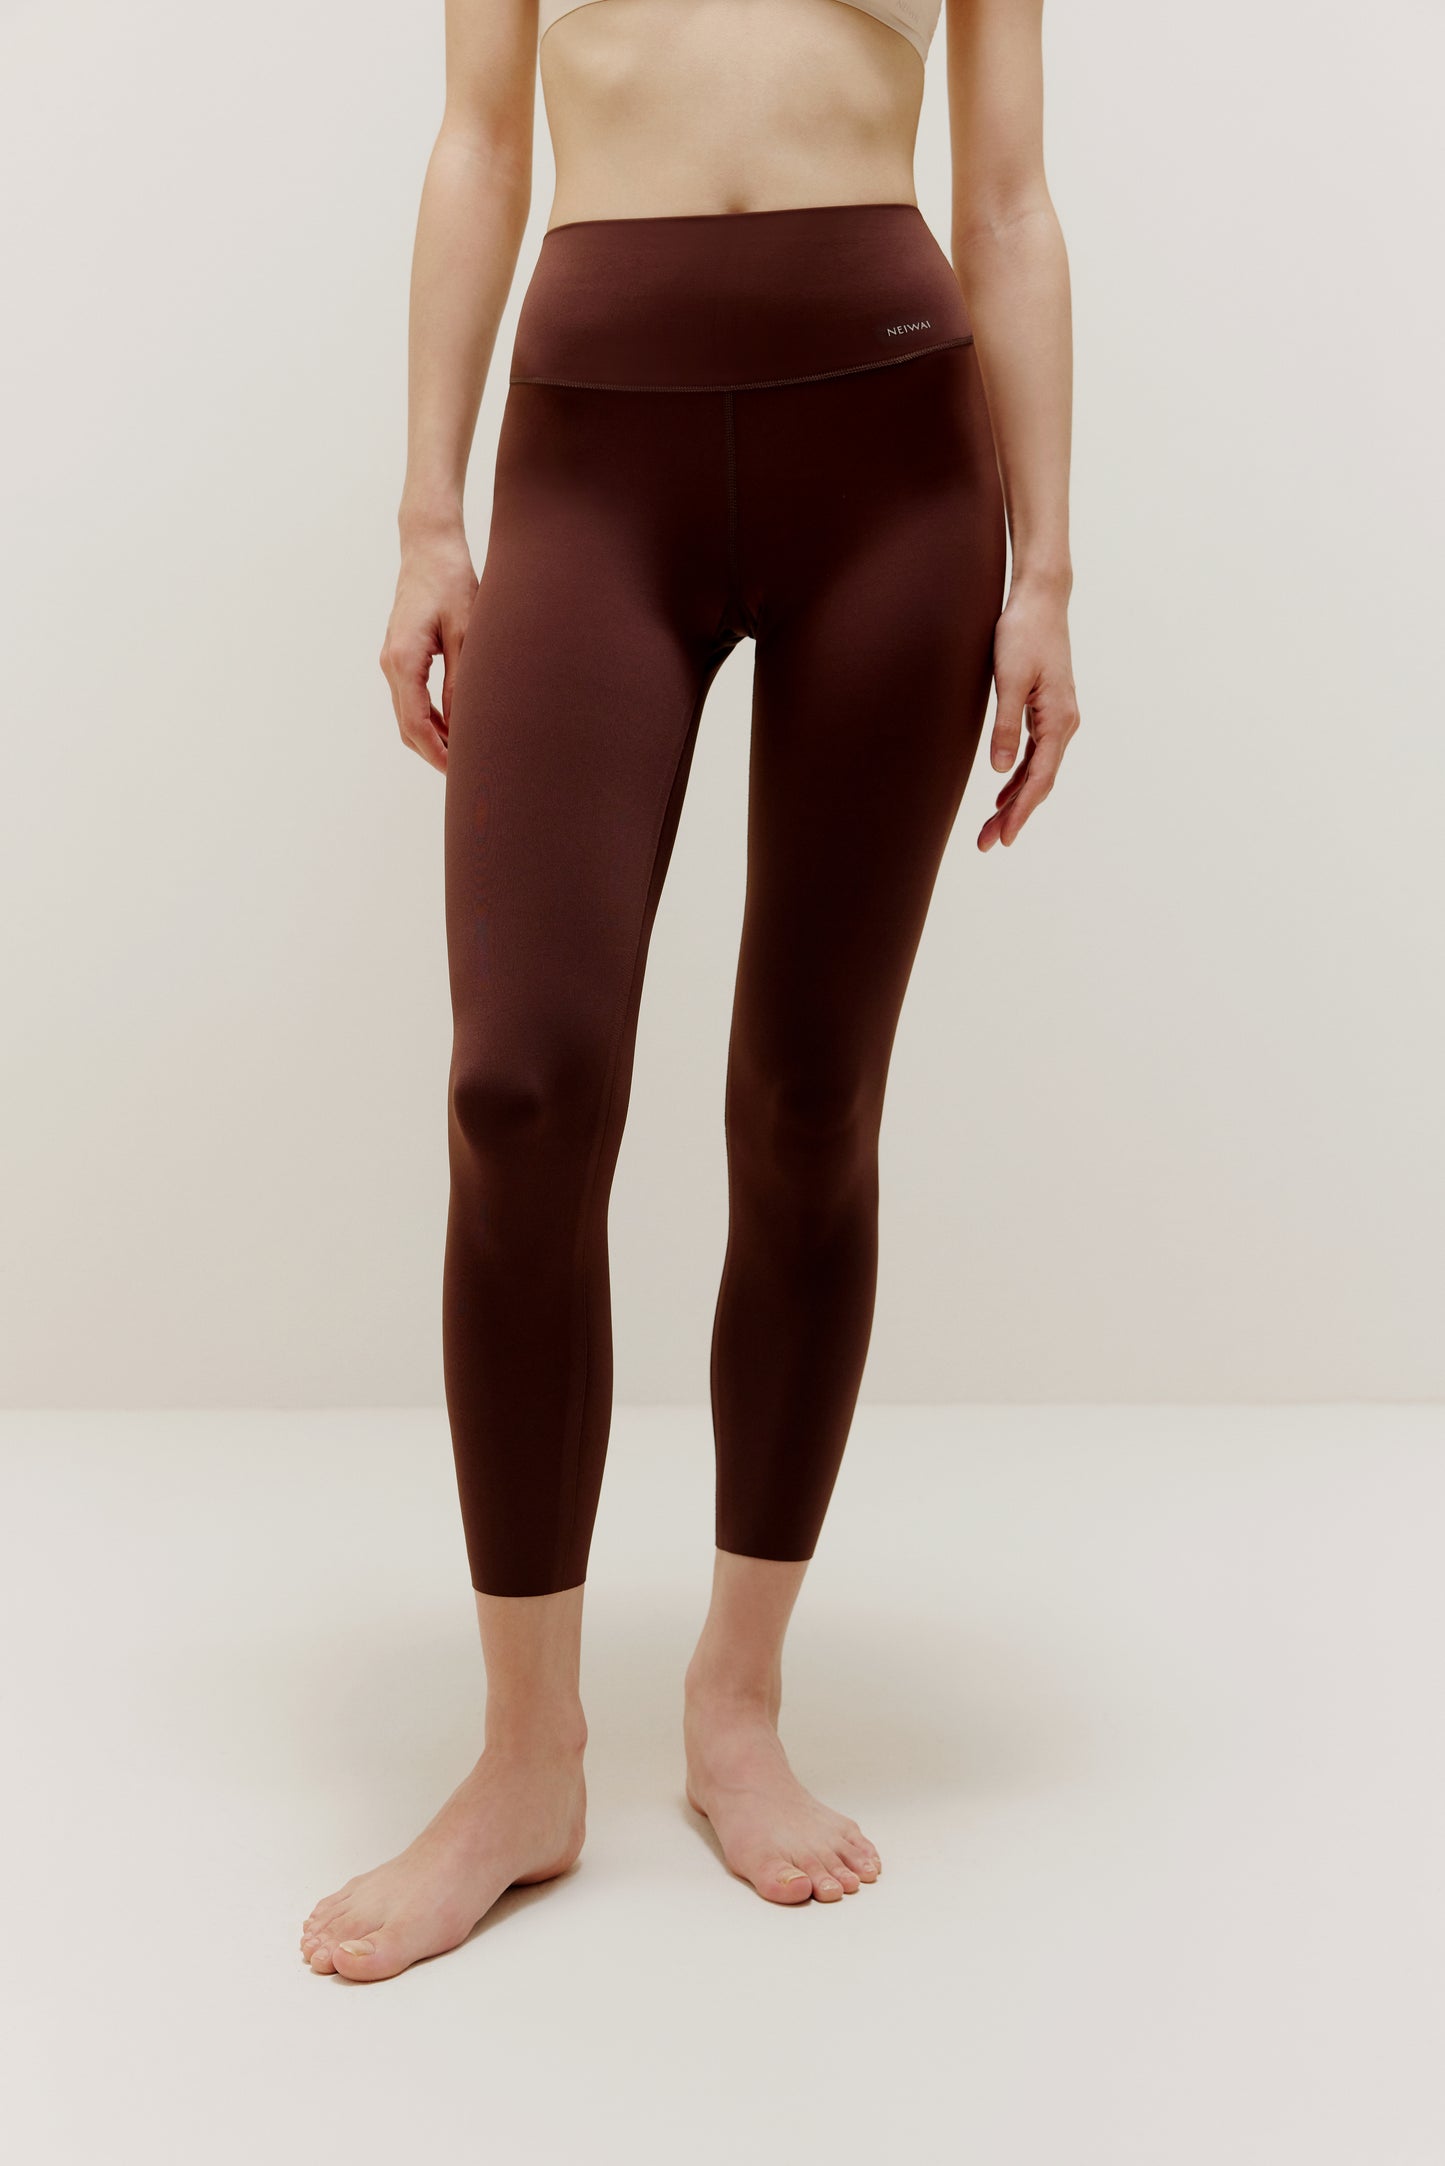 Woman wearing brown leggings